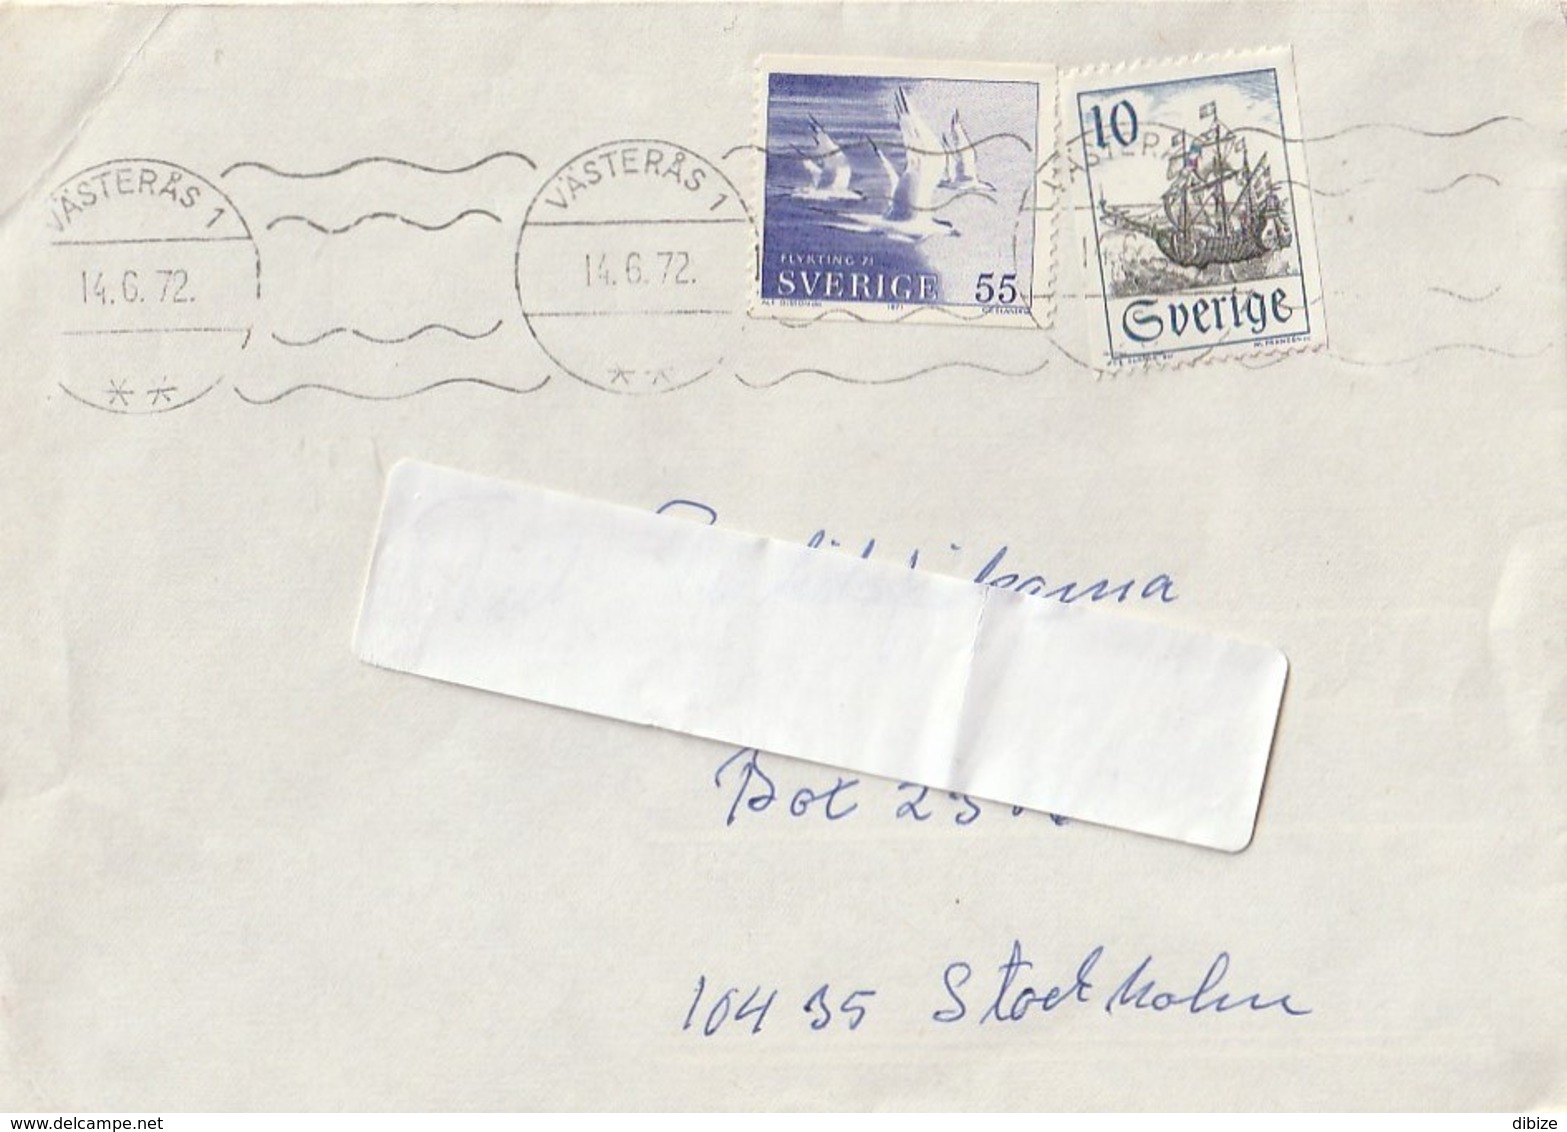 Brev Som Har Cirkulerat. Sverige. 2 Frimärken. 2 Postmärken Av Västerås. 1972. - 1930- ... Coil Stamps II